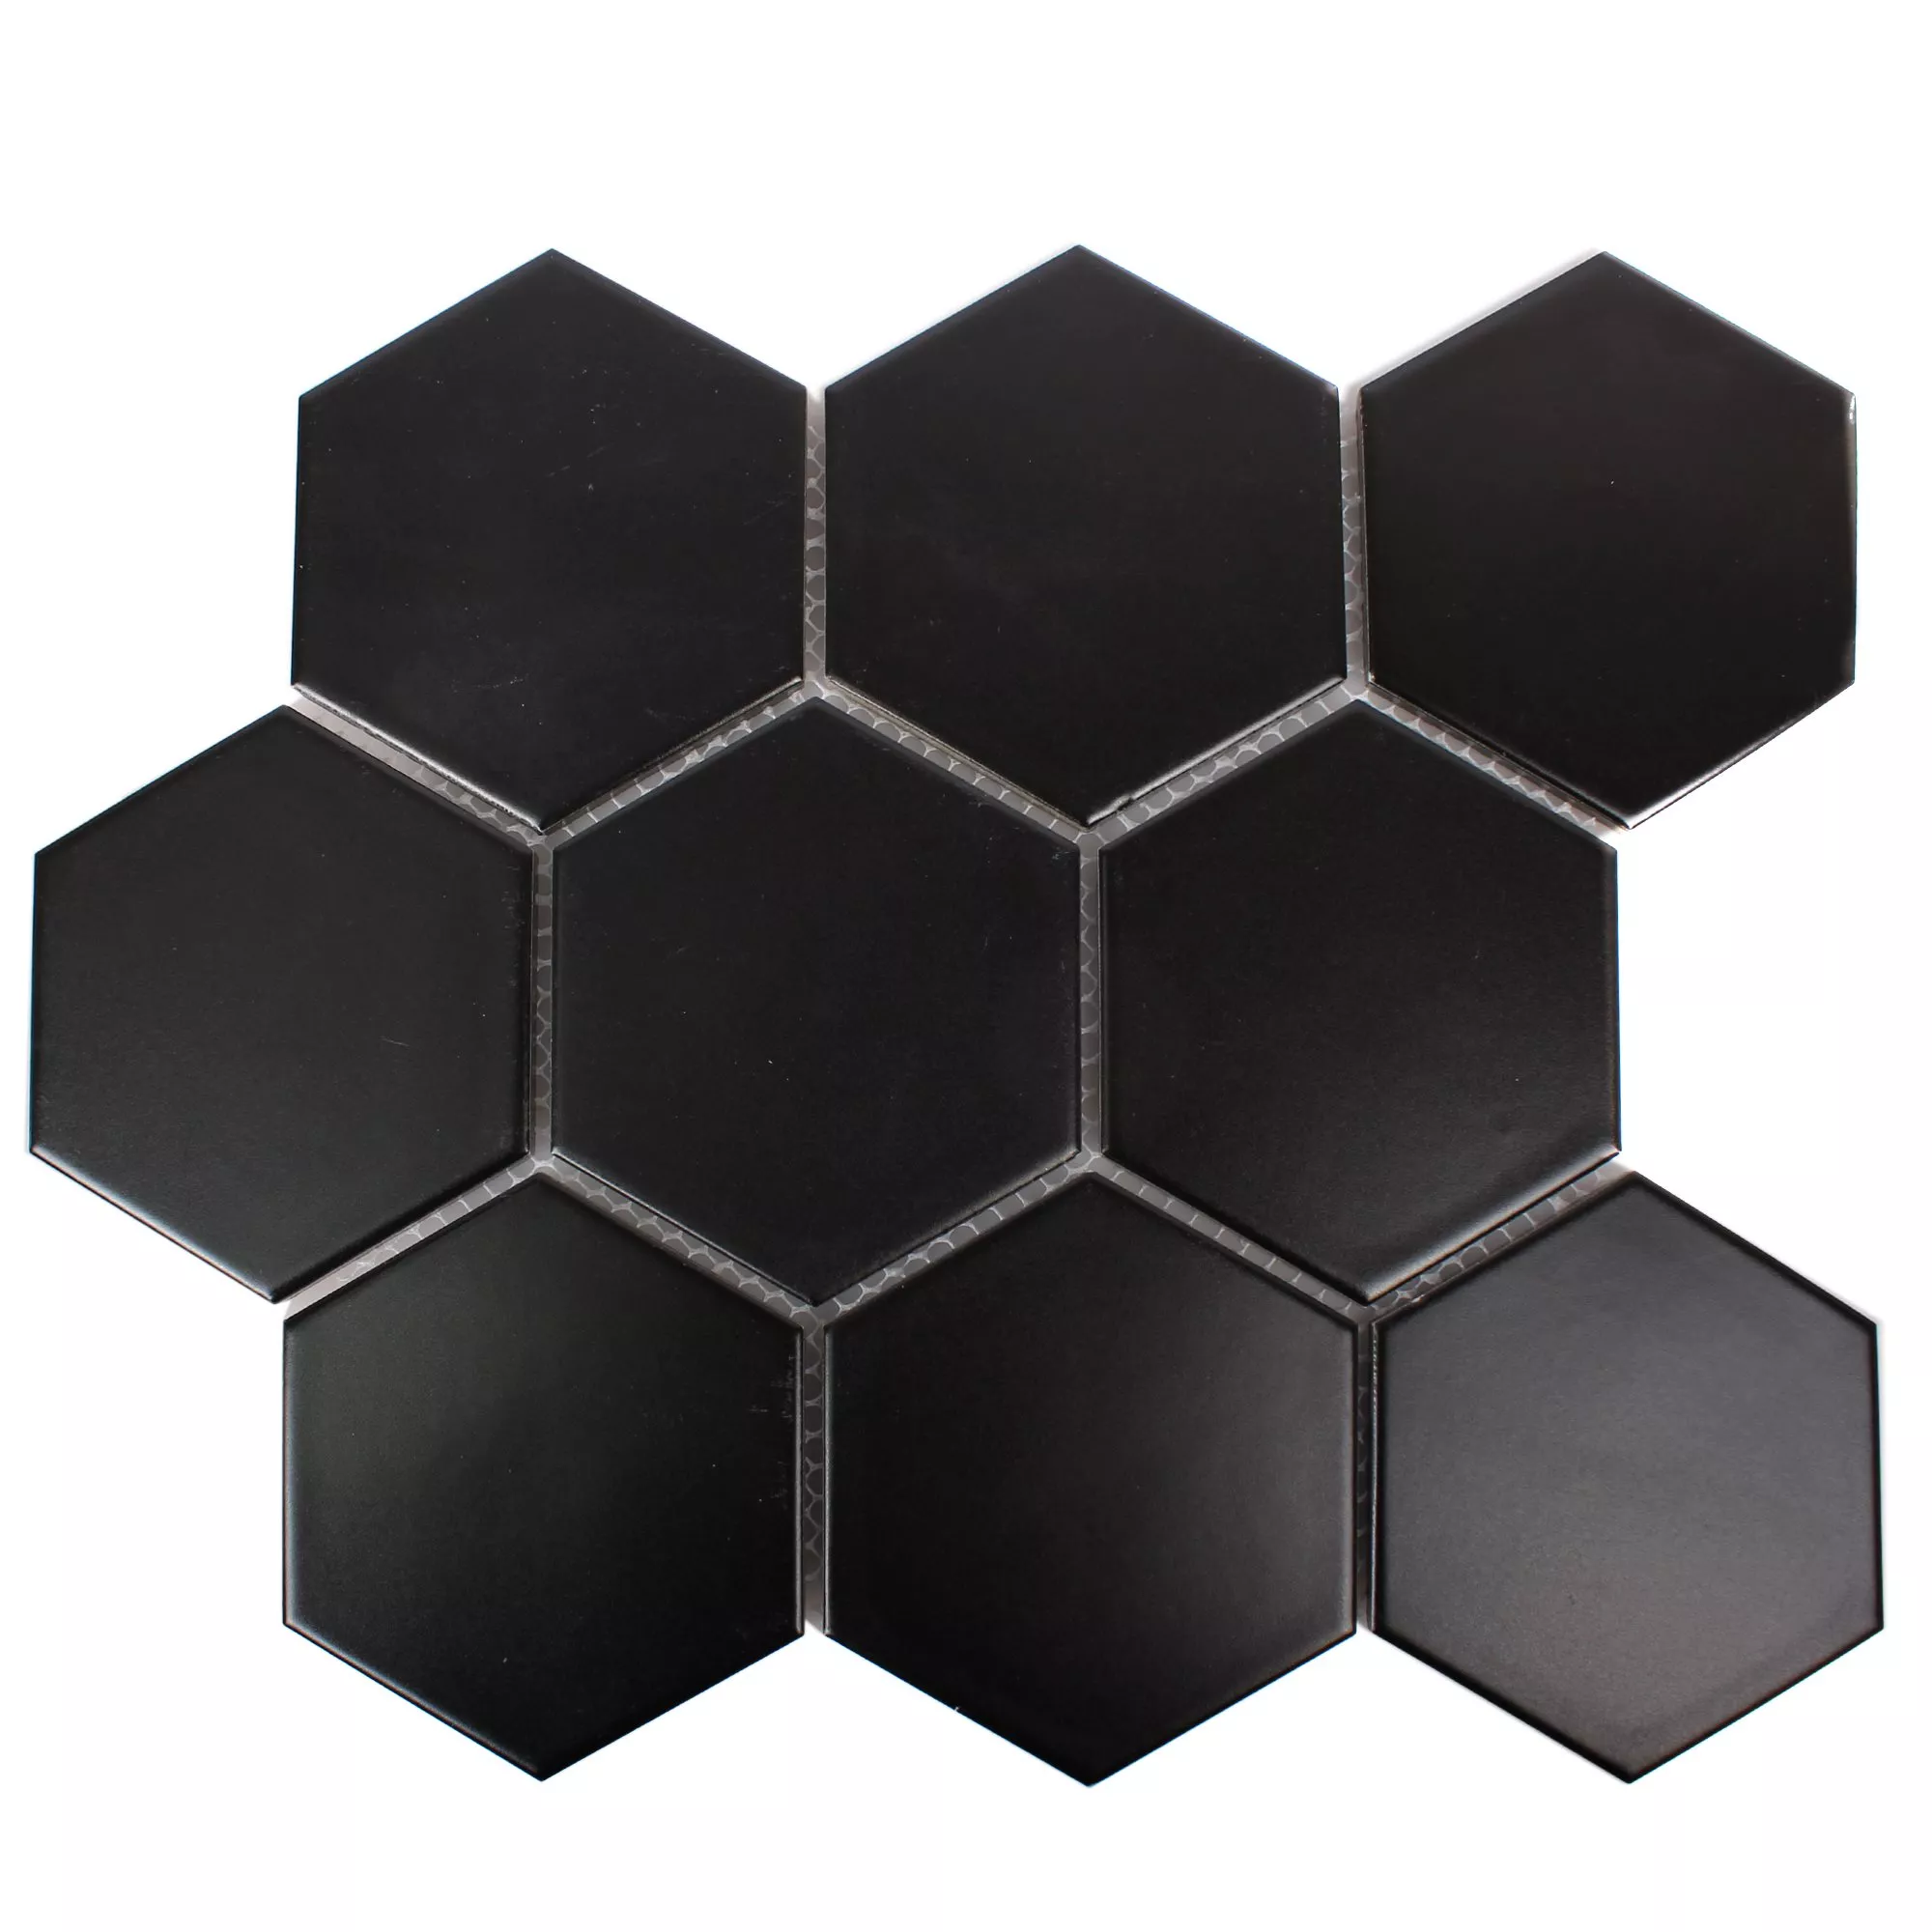 Sample Ceramic Mosaic Tiles Hexagon Salamanca Black Mat H95